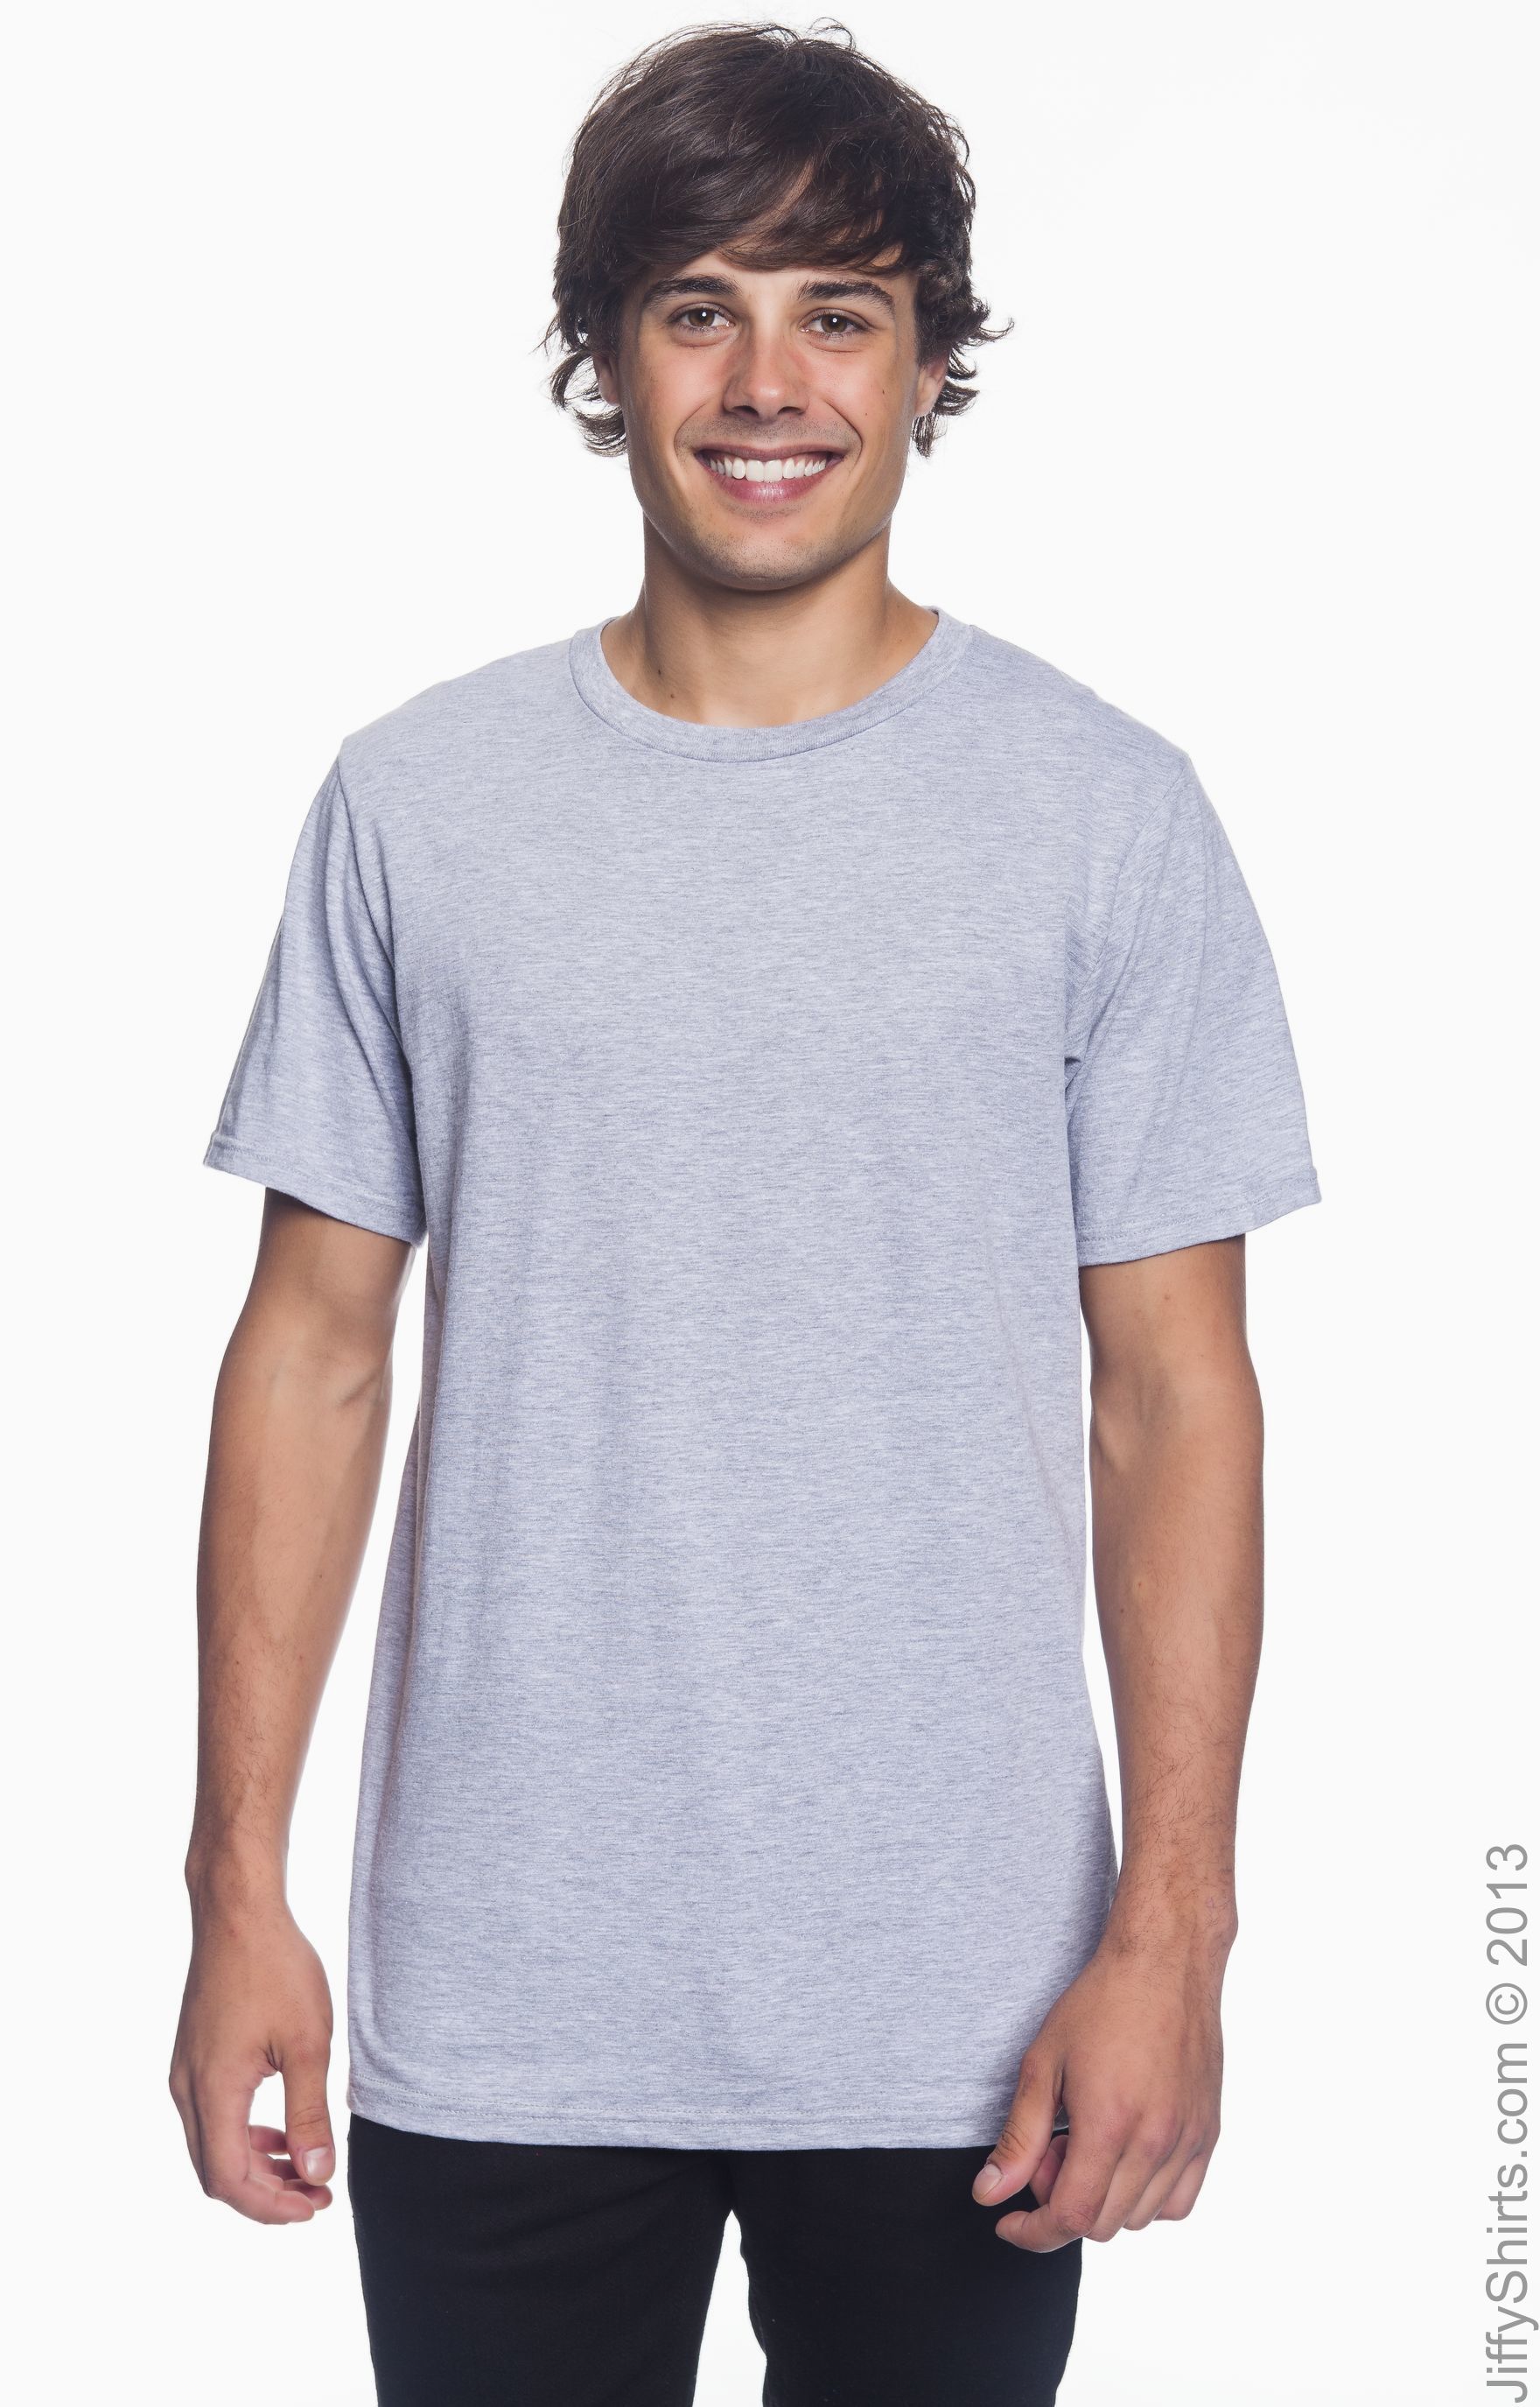 anvil 980 lightweight t shirt